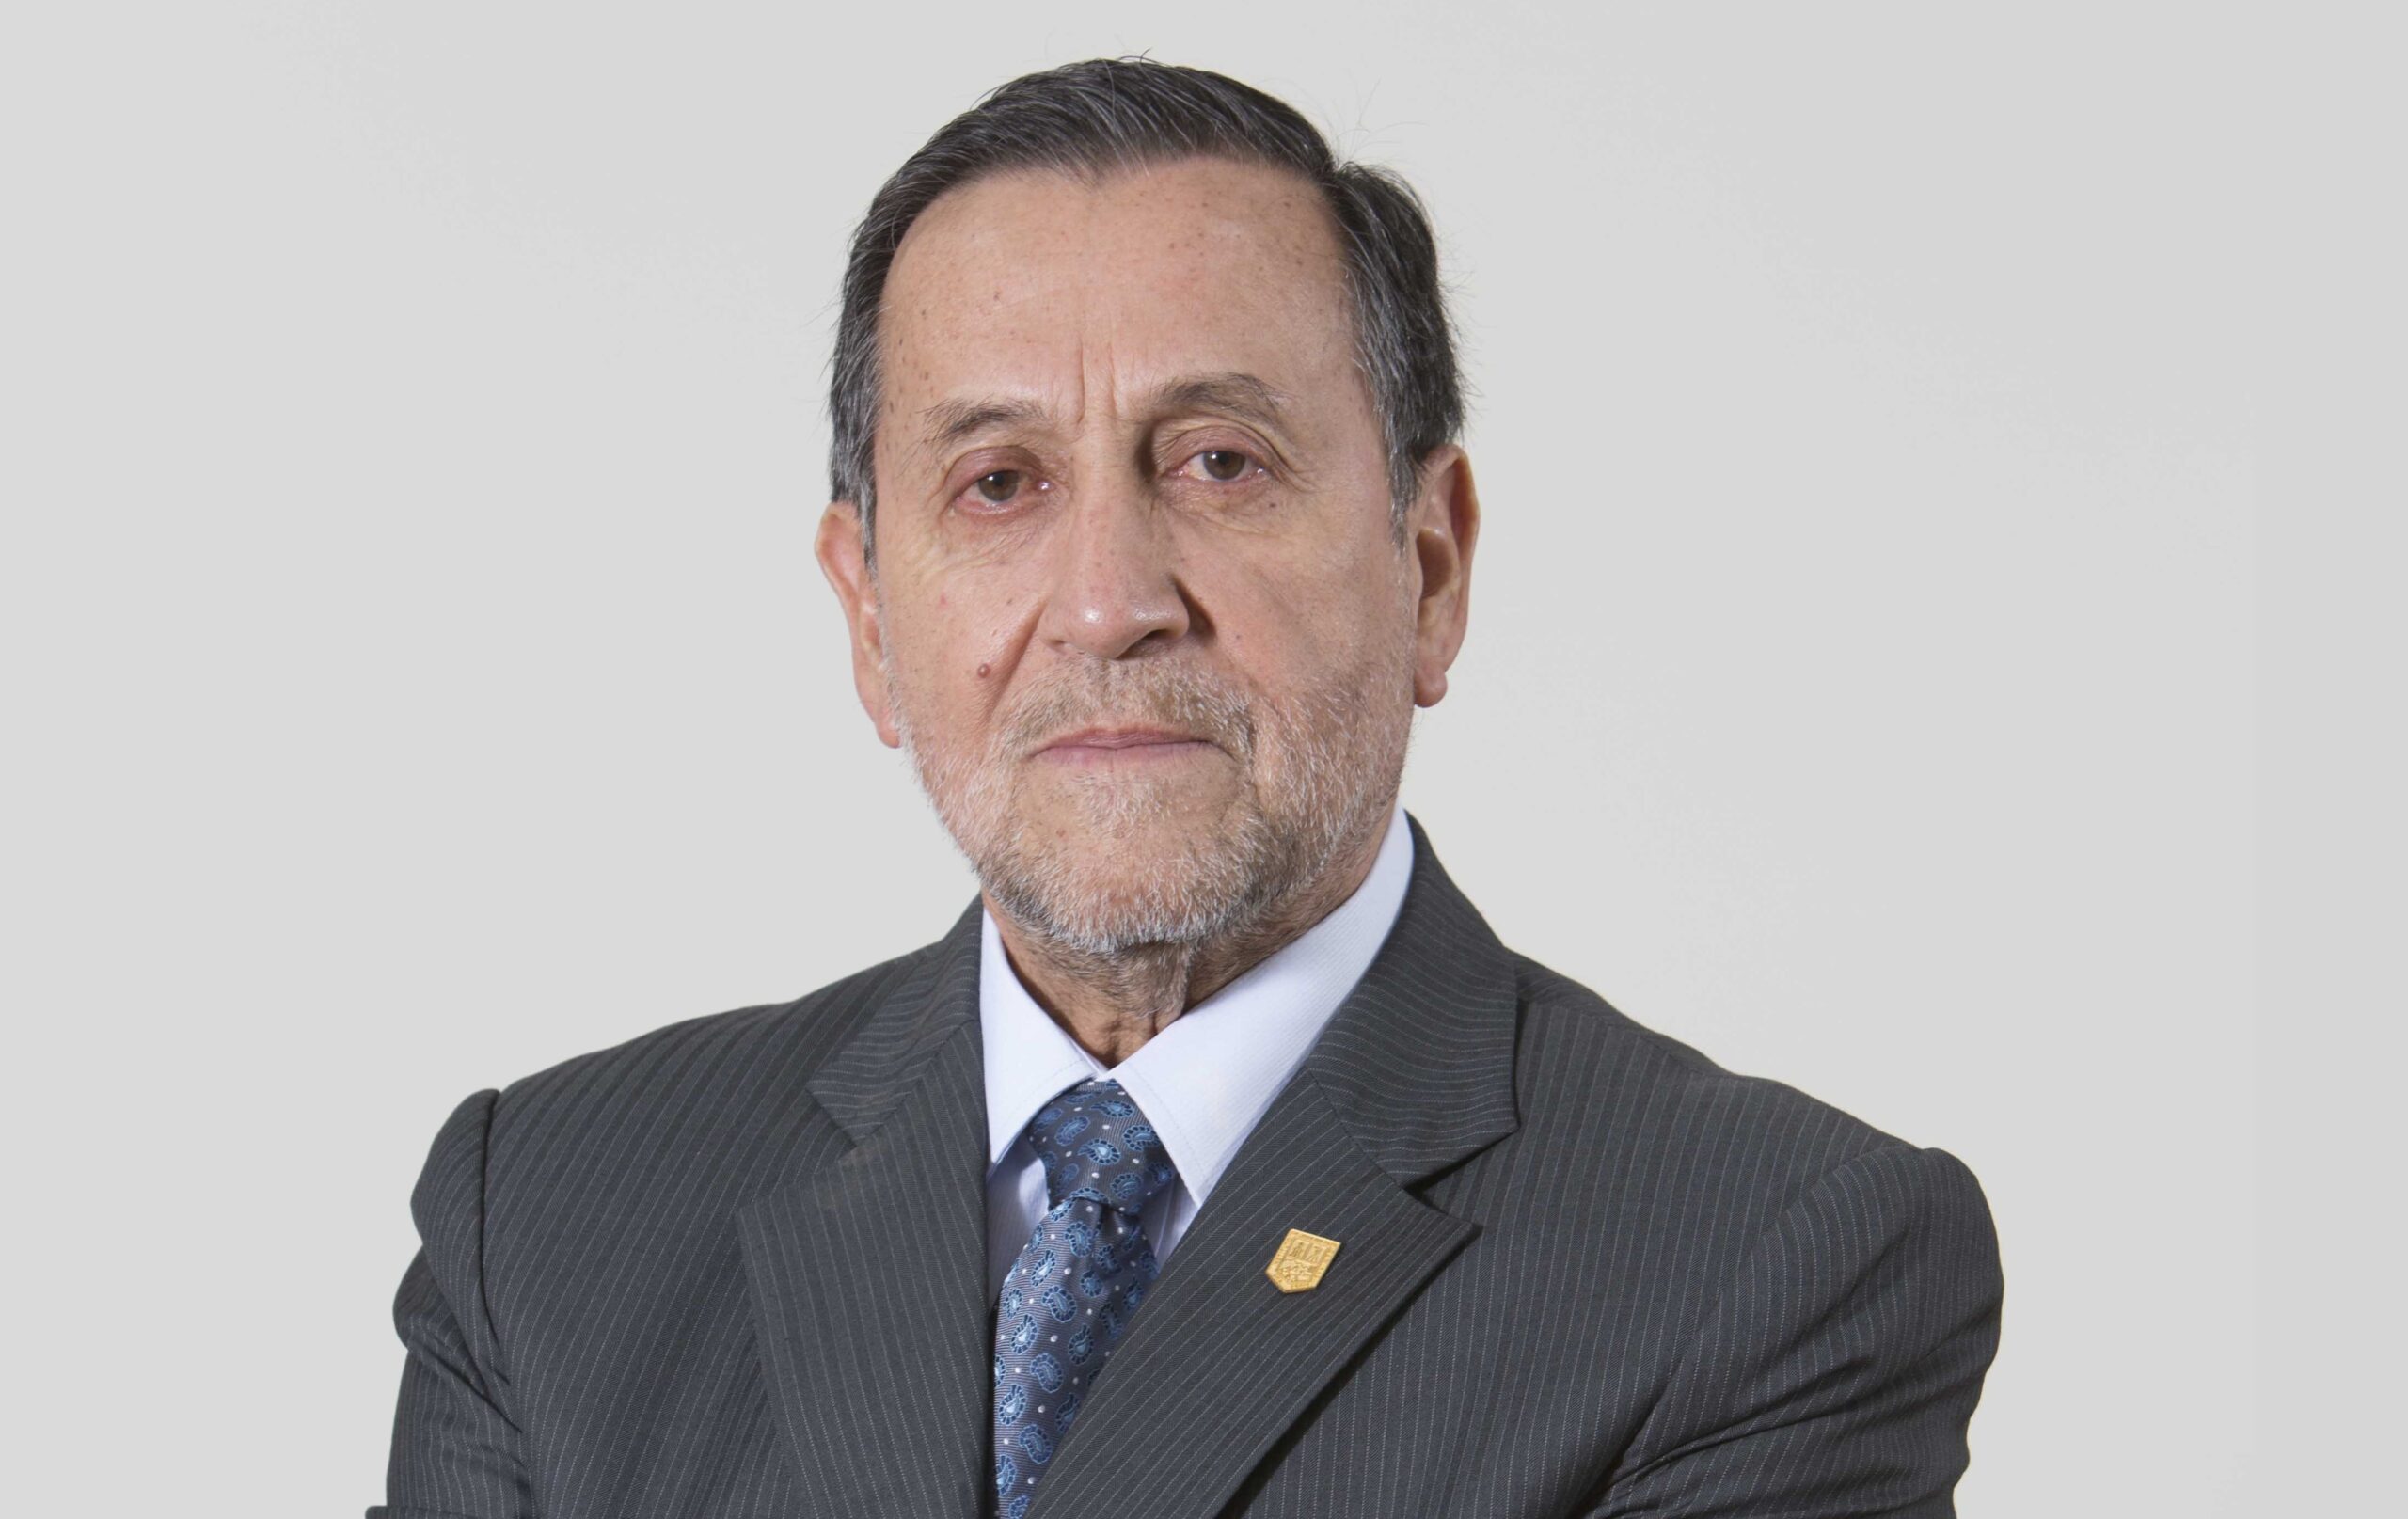 Miguel Cardozo